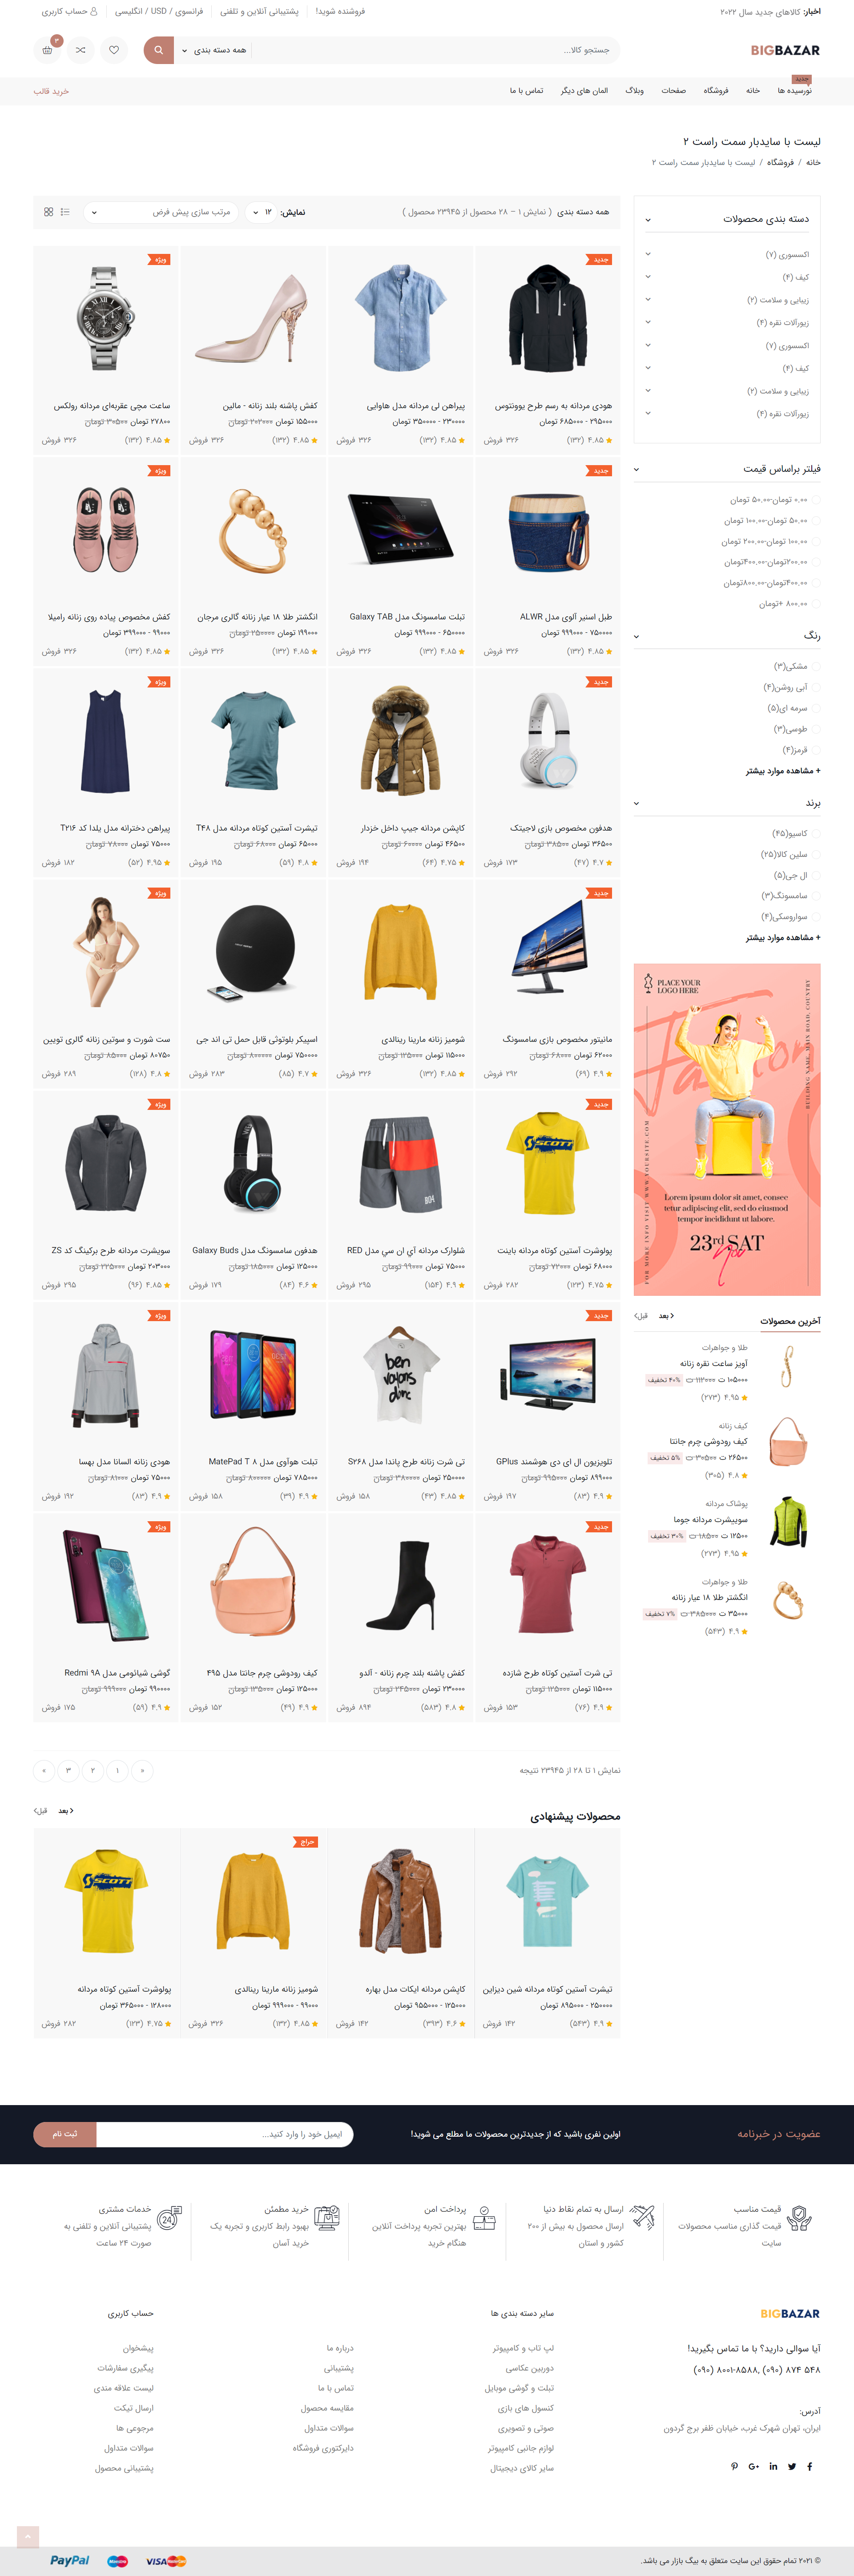 صفحه محصولات قالب html بیگ بازار